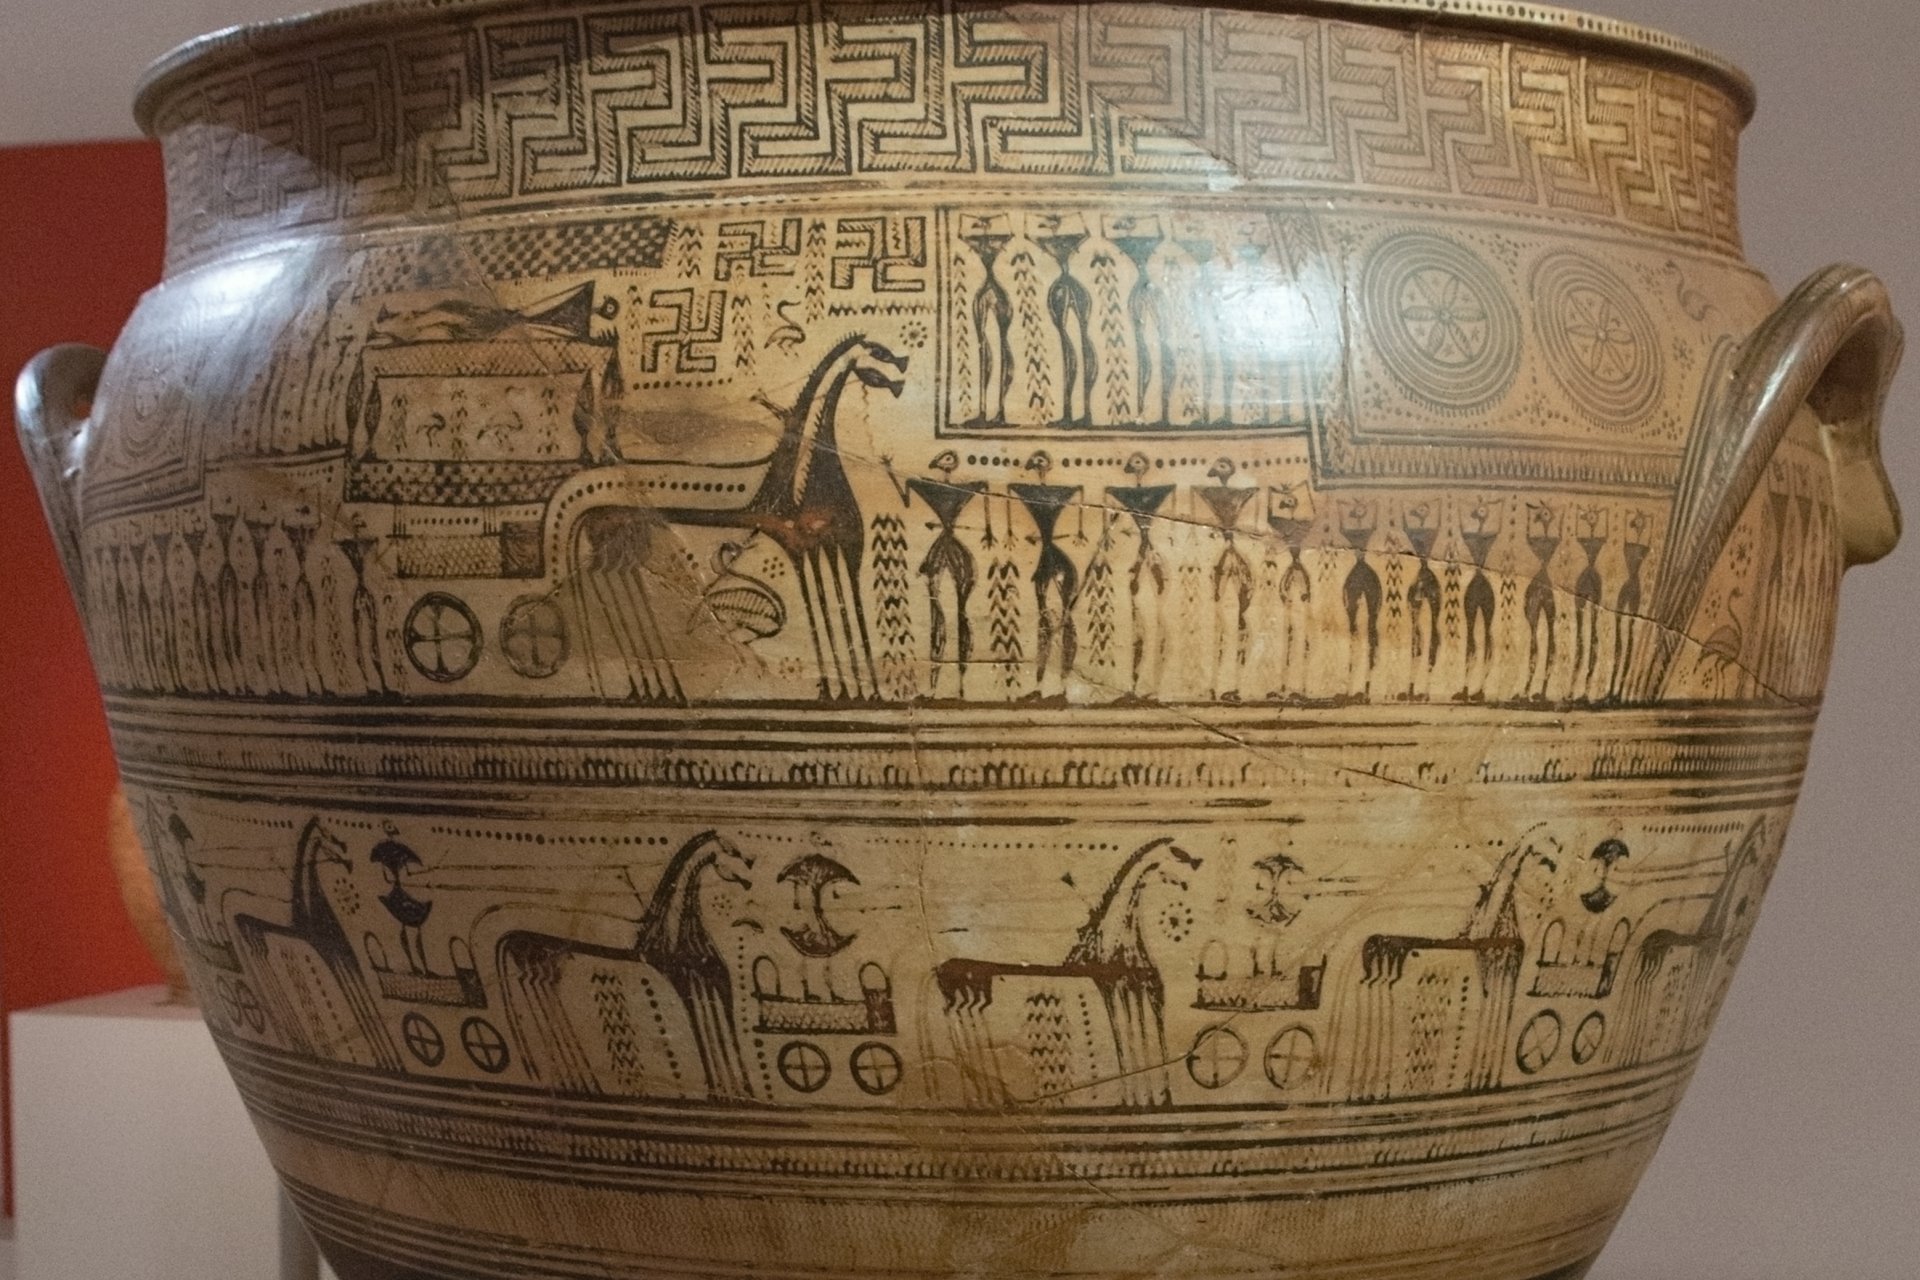 Koňské spřežení jako součást pohřebního rituálu na nádobě z takzvaného pozdně geometrického období (konec 8. století před n. l.). Koňský zápřah táhne vůz s nebožtíkem, který doprovází průvod jezdců